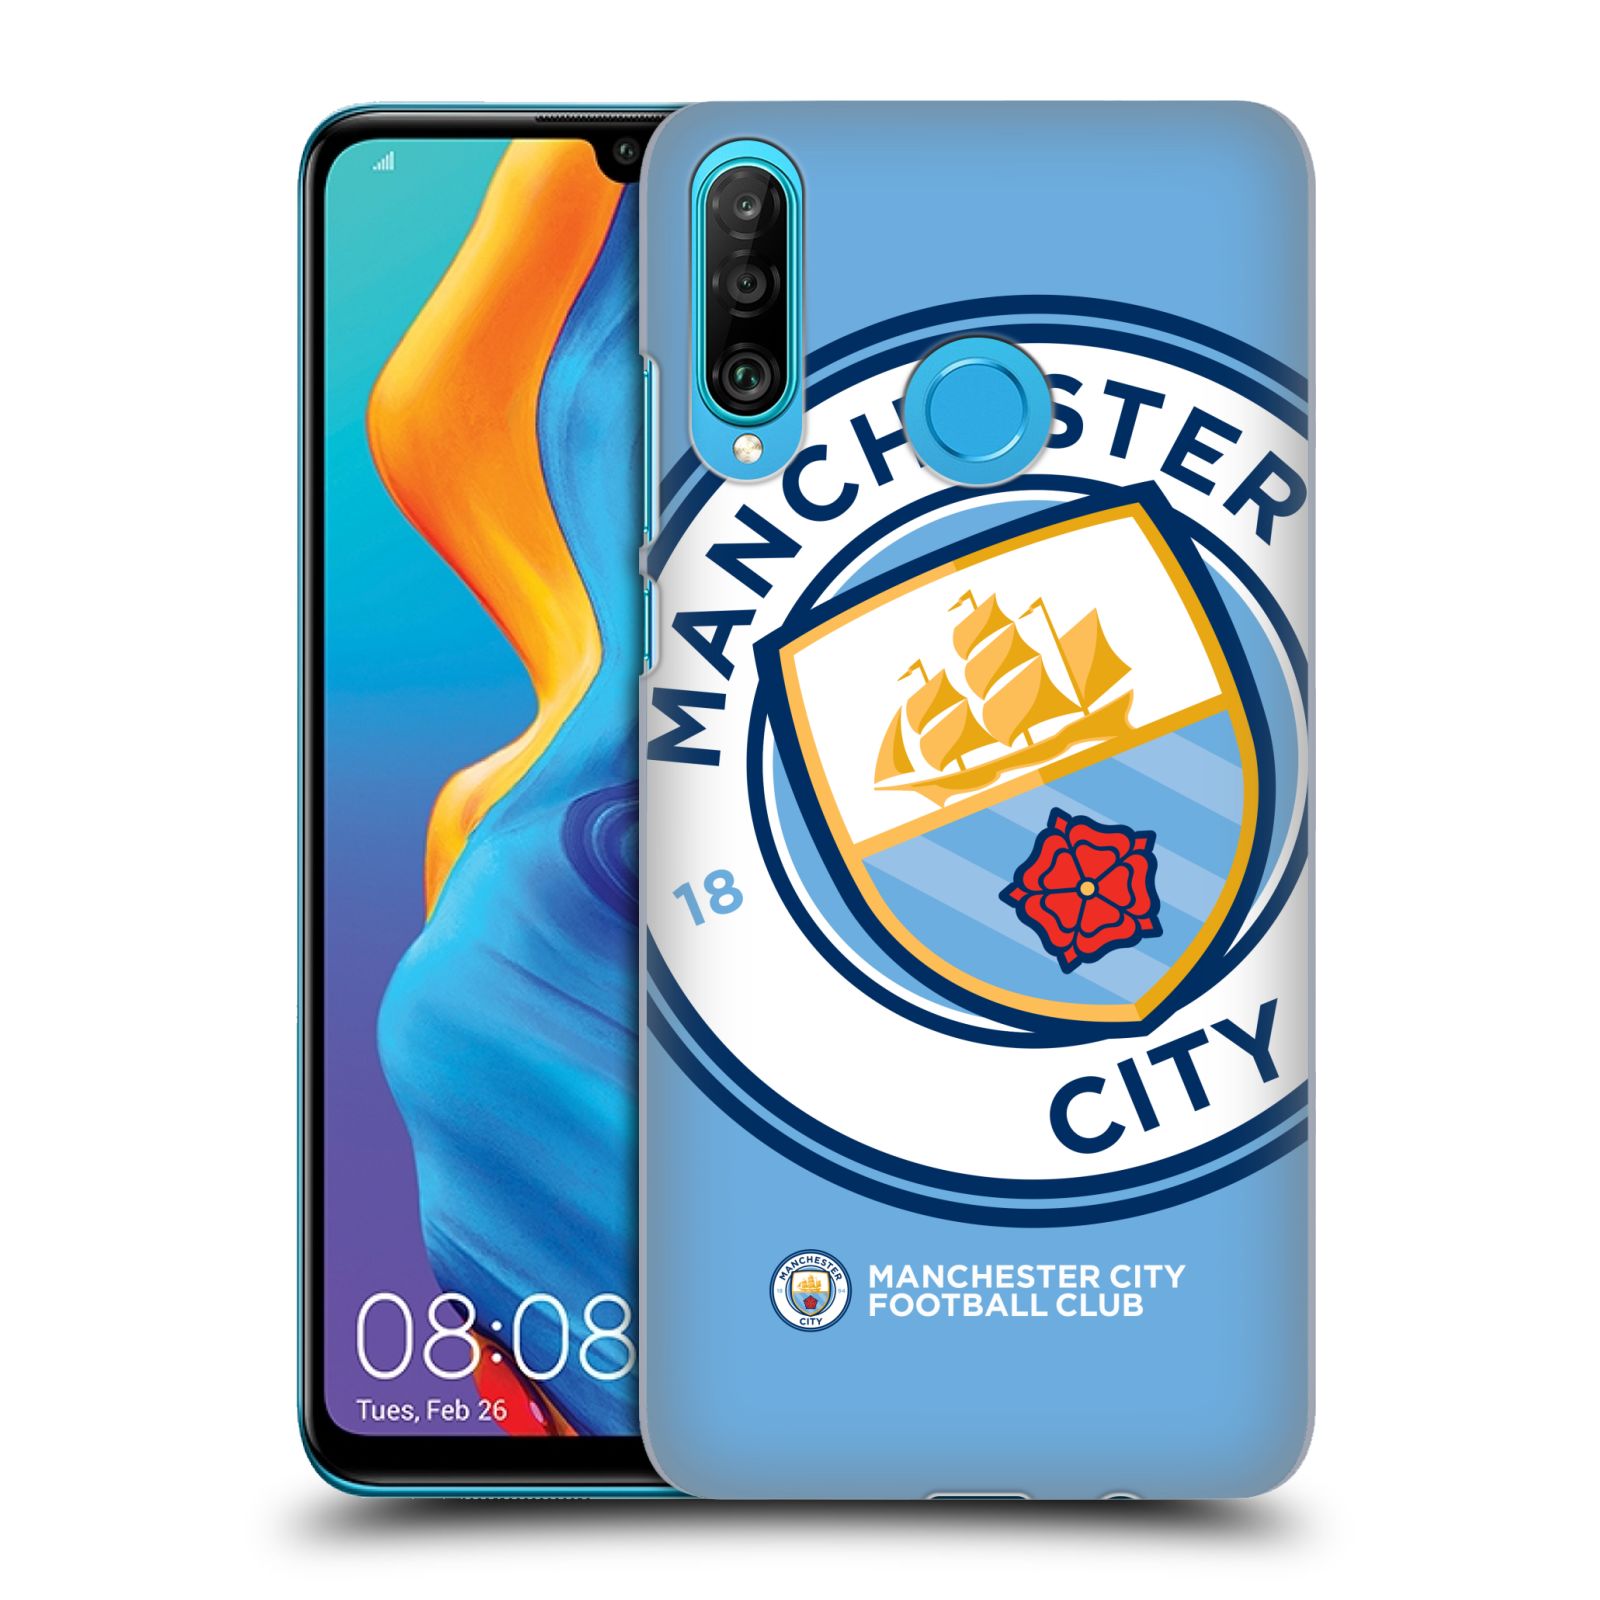 Pouzdro na mobil Huawei P30 LITE - HEAD CASE - Fotbalový klub Manchester City modrý velký přesahující znak